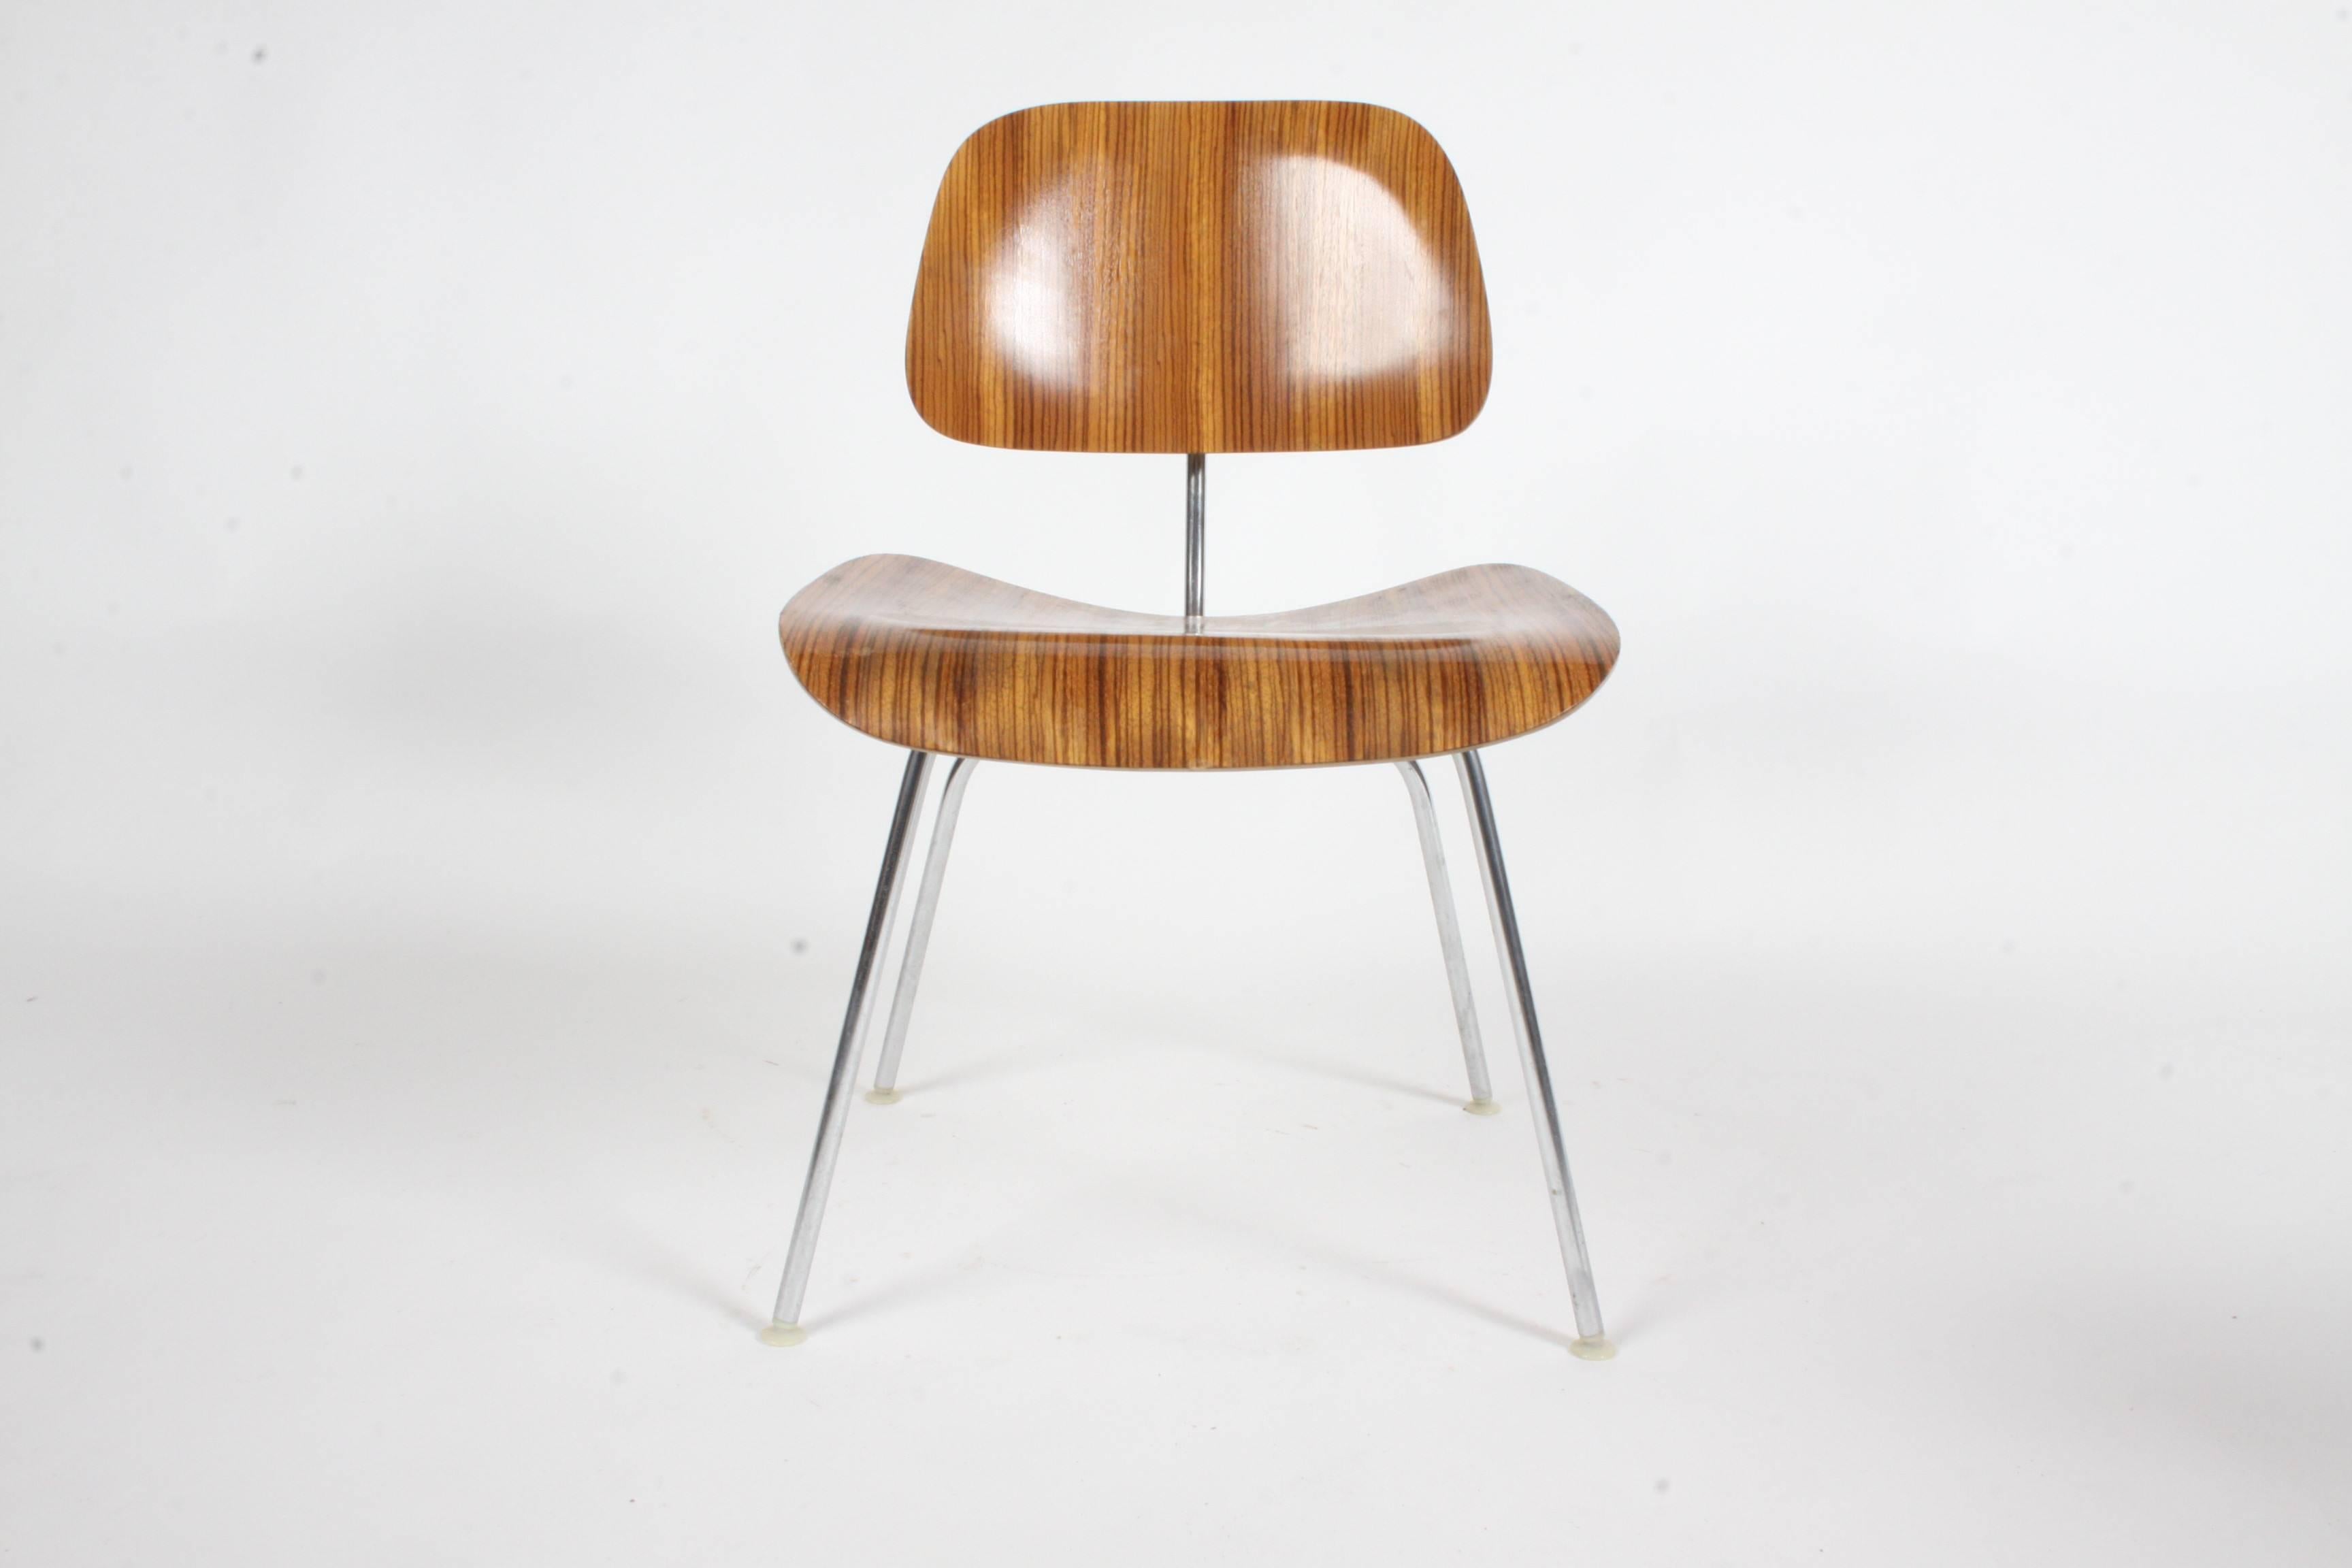  Chaises DCM en bois zébré Charles Eames pour Herman Miller, ensemble rare. Le bois de zèbre a été utilisé de 1954 à 1959. Très bon état d'origine, petites éraflures sur le siège. Labels.